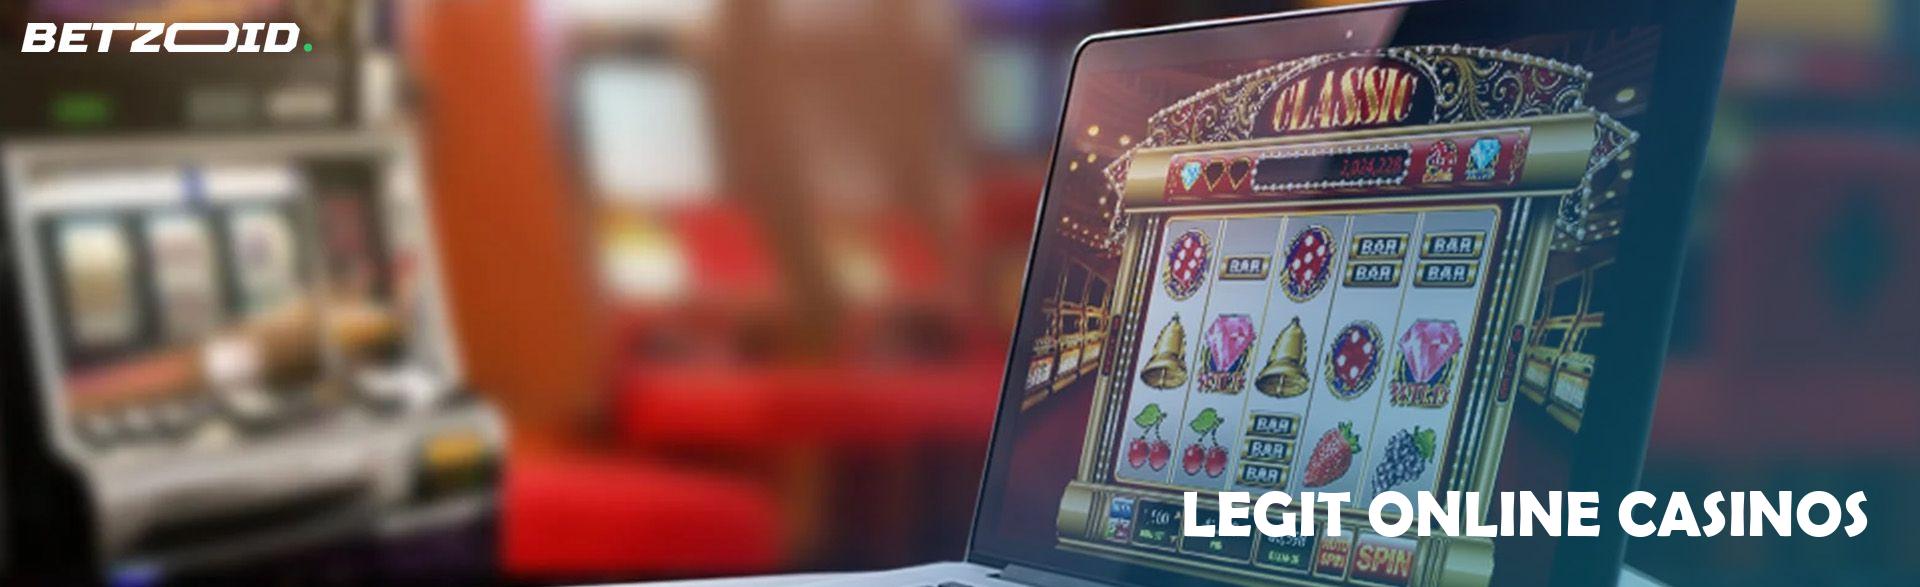 Legit Online Casinos.